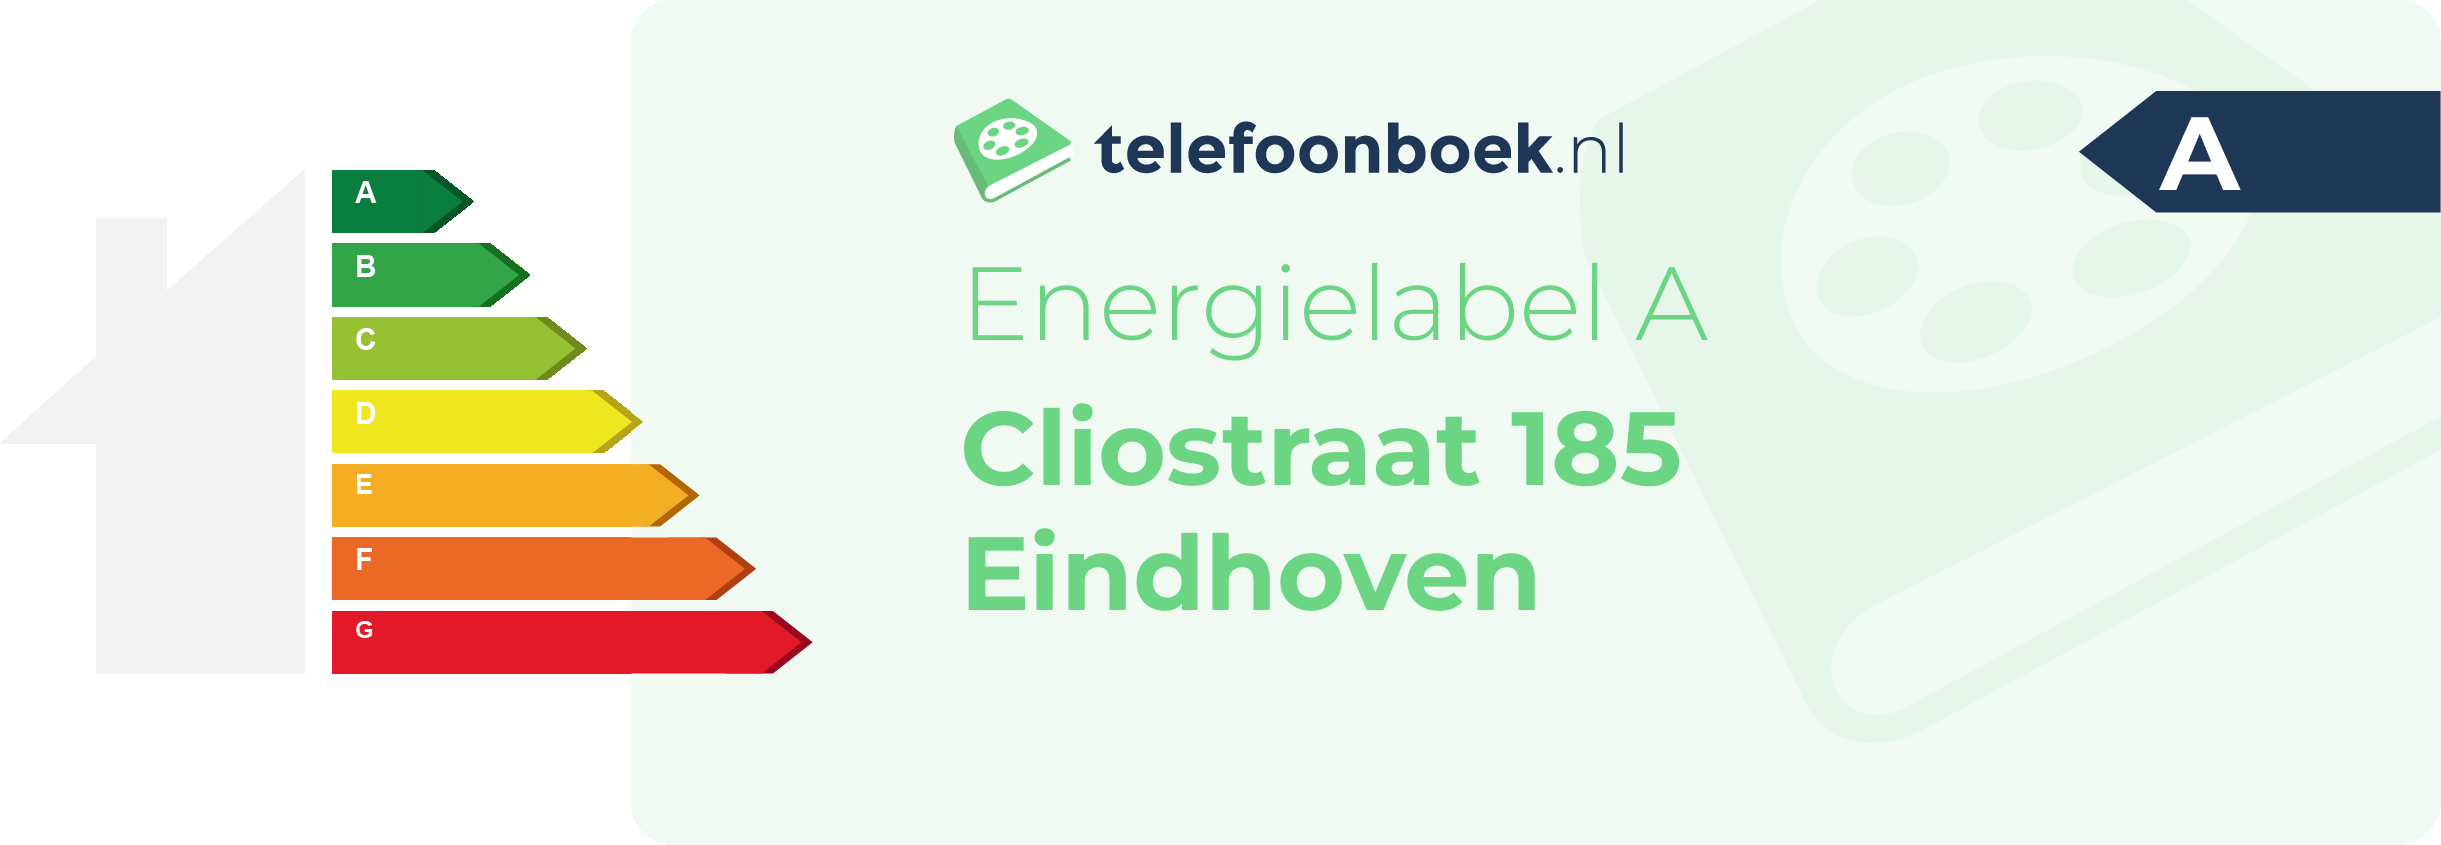 Energielabel Cliostraat 185 Eindhoven